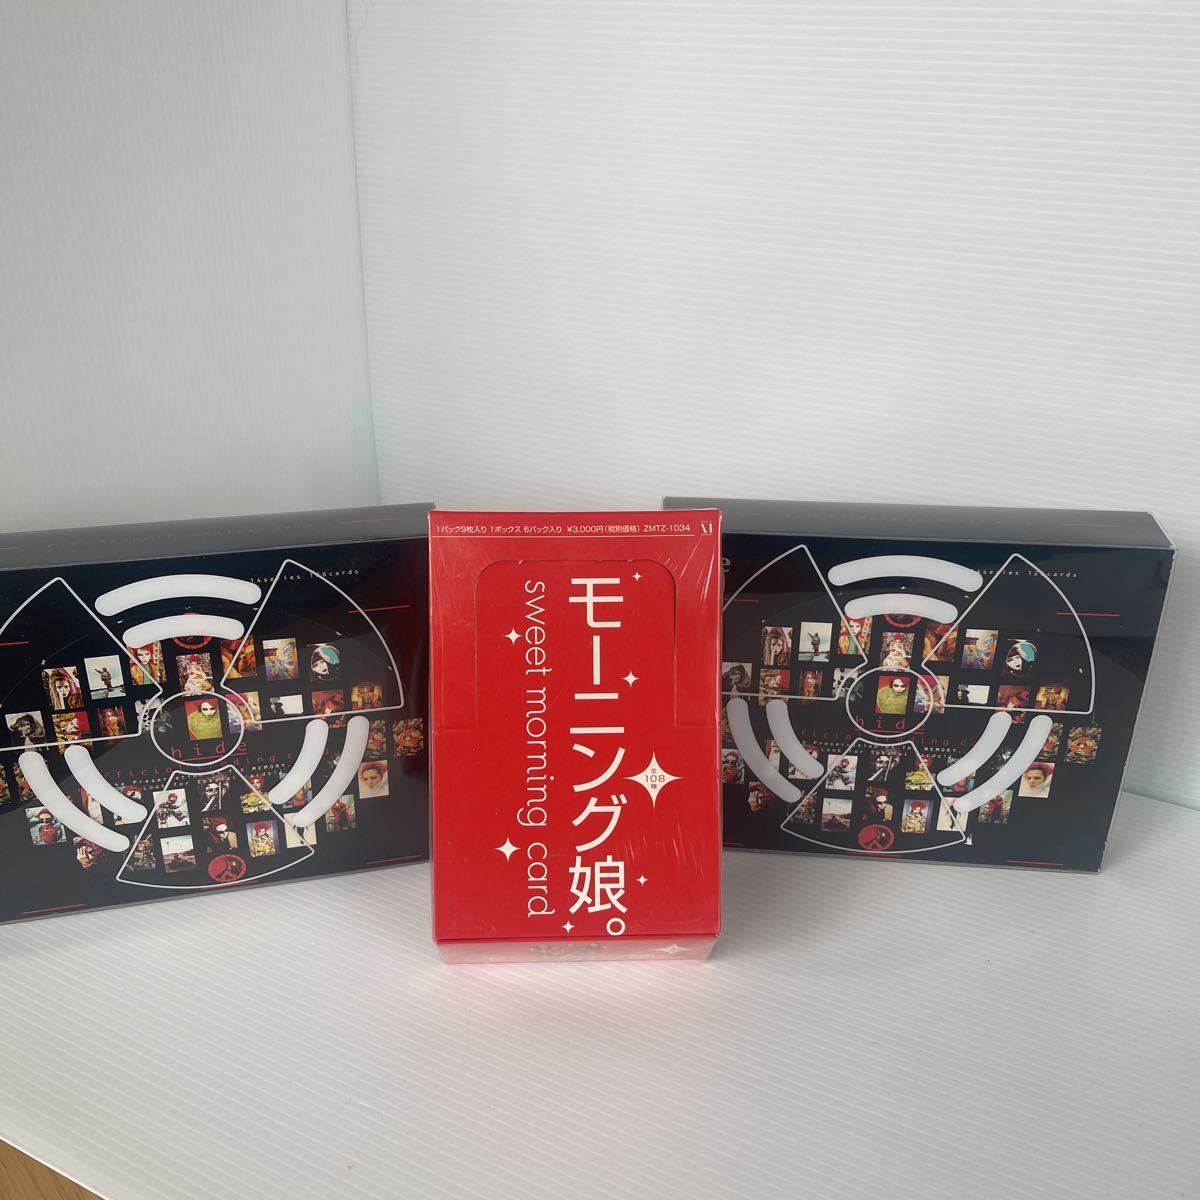 hide オフィシャルトレーディングカード1BOX(12パック入り)、モー娘